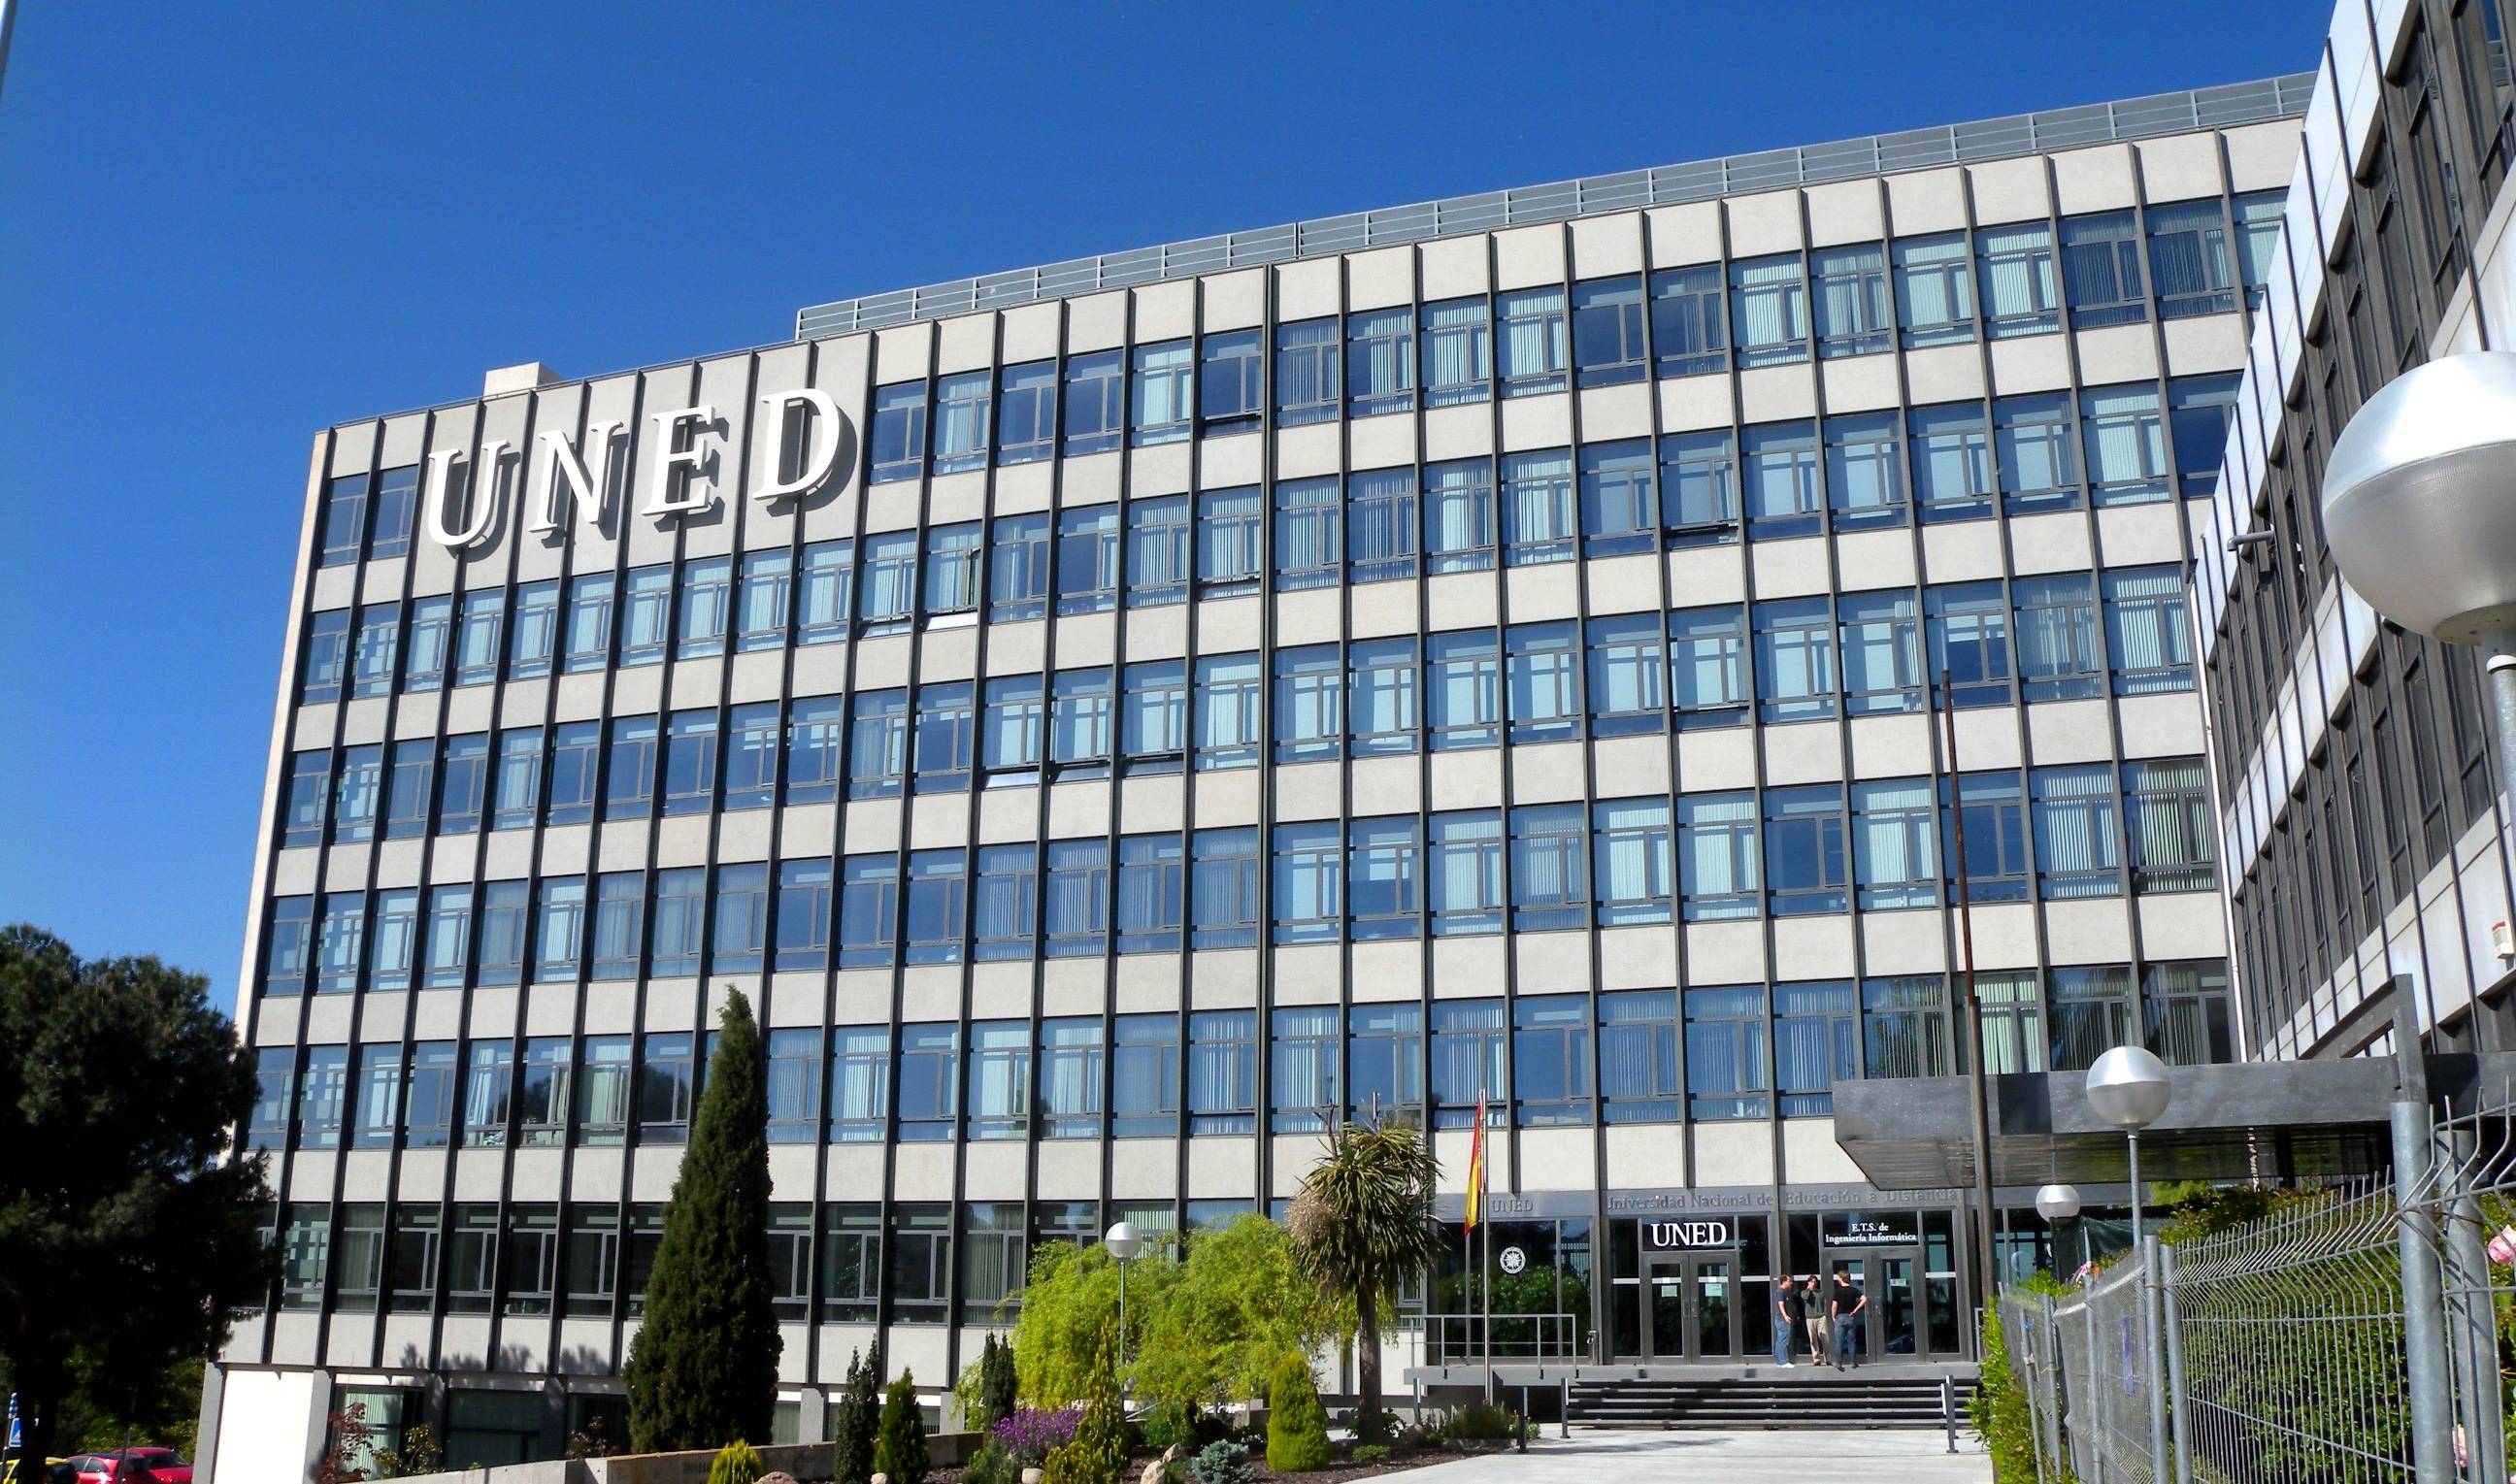 UNED – Национальный университет дистанционного образования в Испании